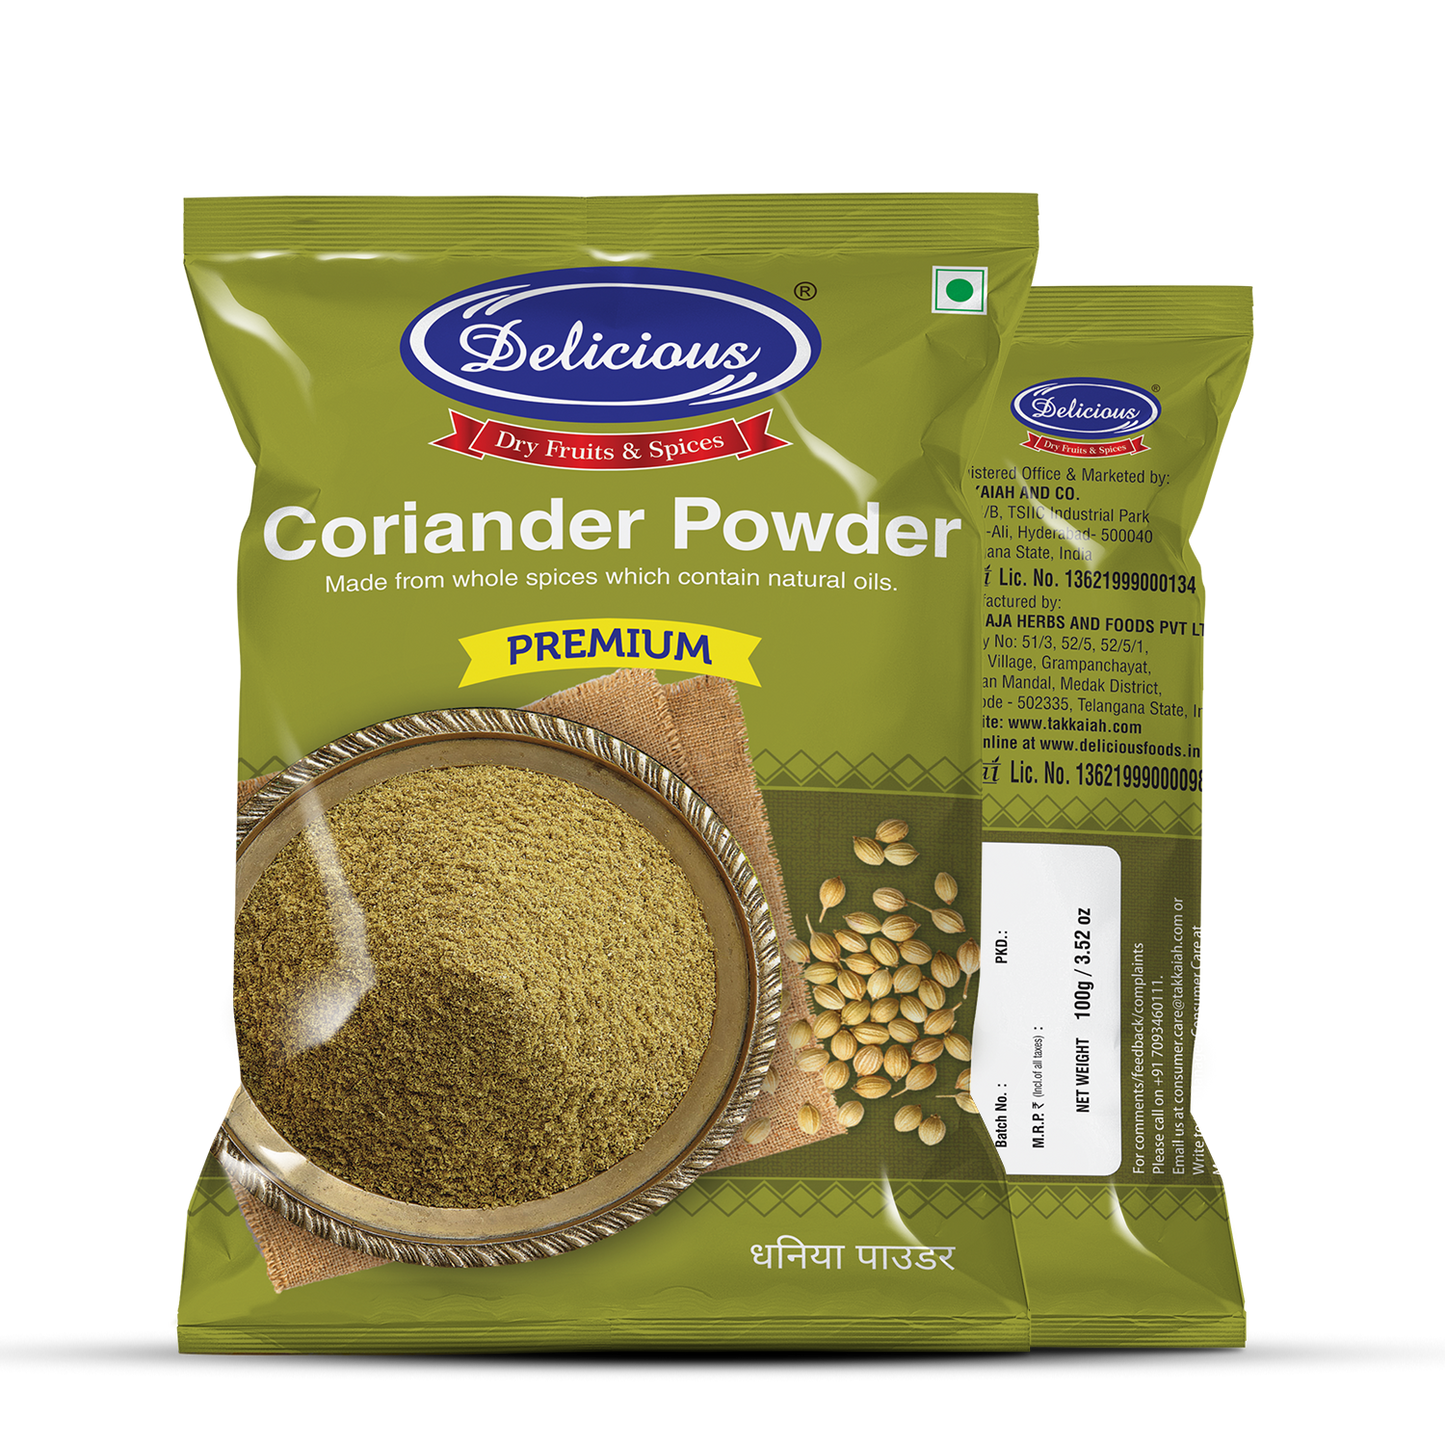 Delicious Coriander Powder